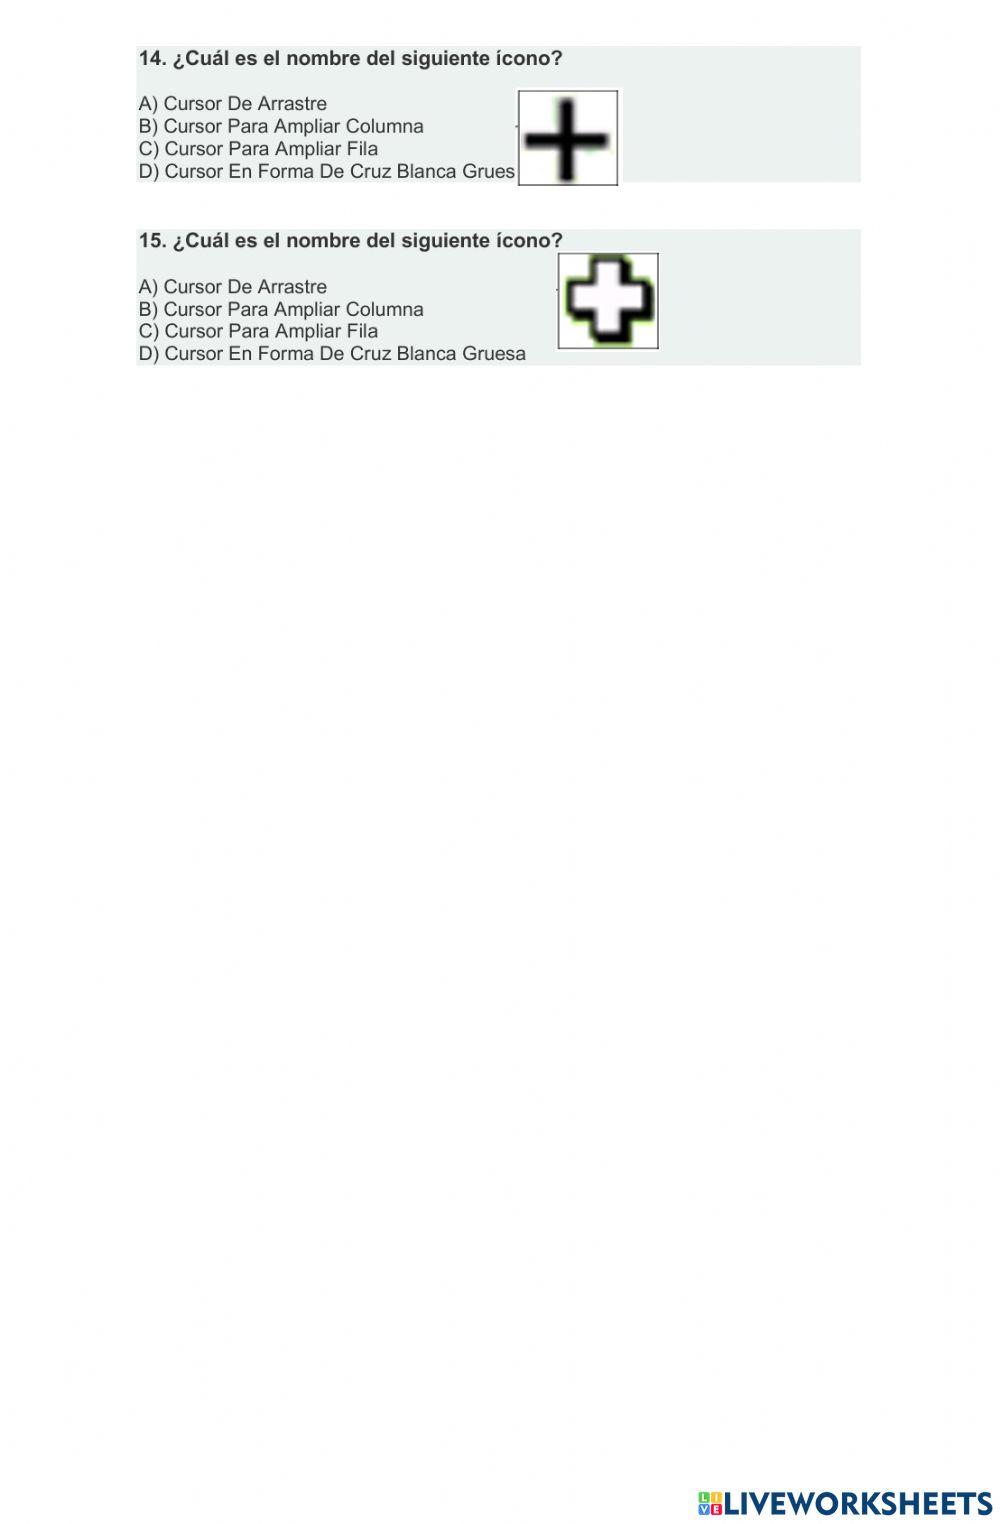 PARCIAL NO. 1 - TERCERA UNIDAD - MICROSOFT EXCEL worksheet | Live Worksheets